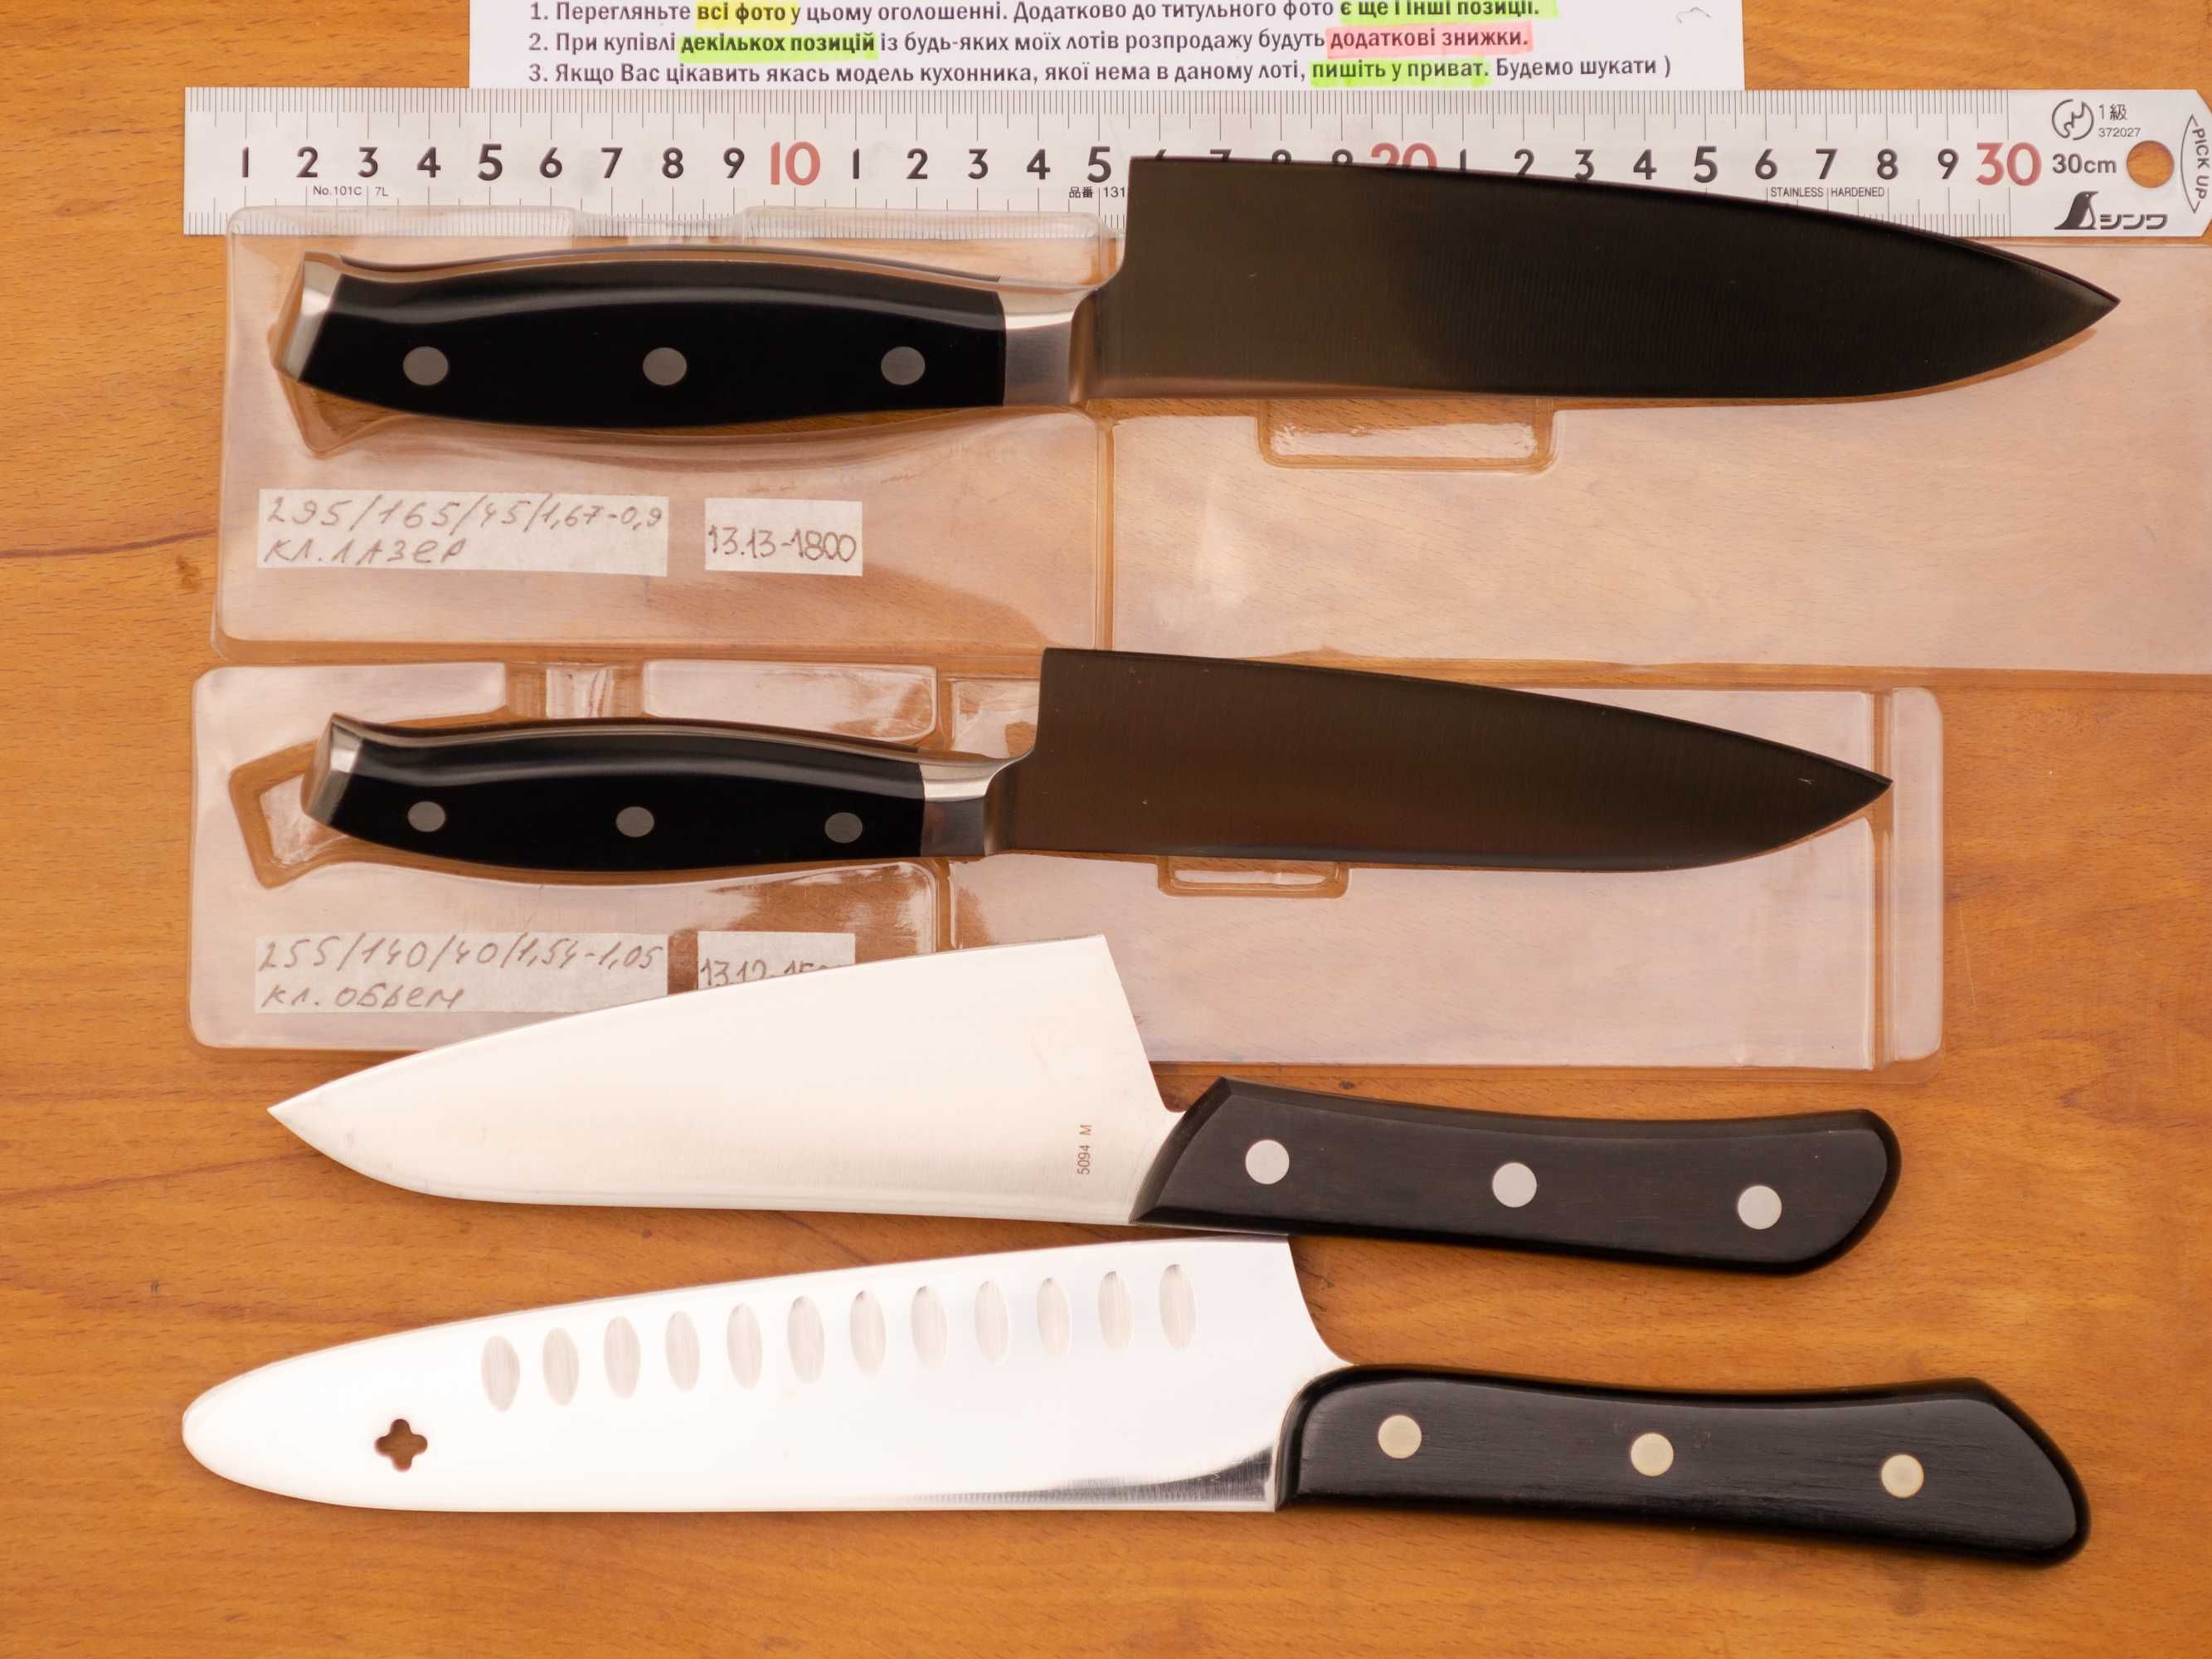 Японські кухонні ножі Yaxell і MAC. оригінали Японский нож